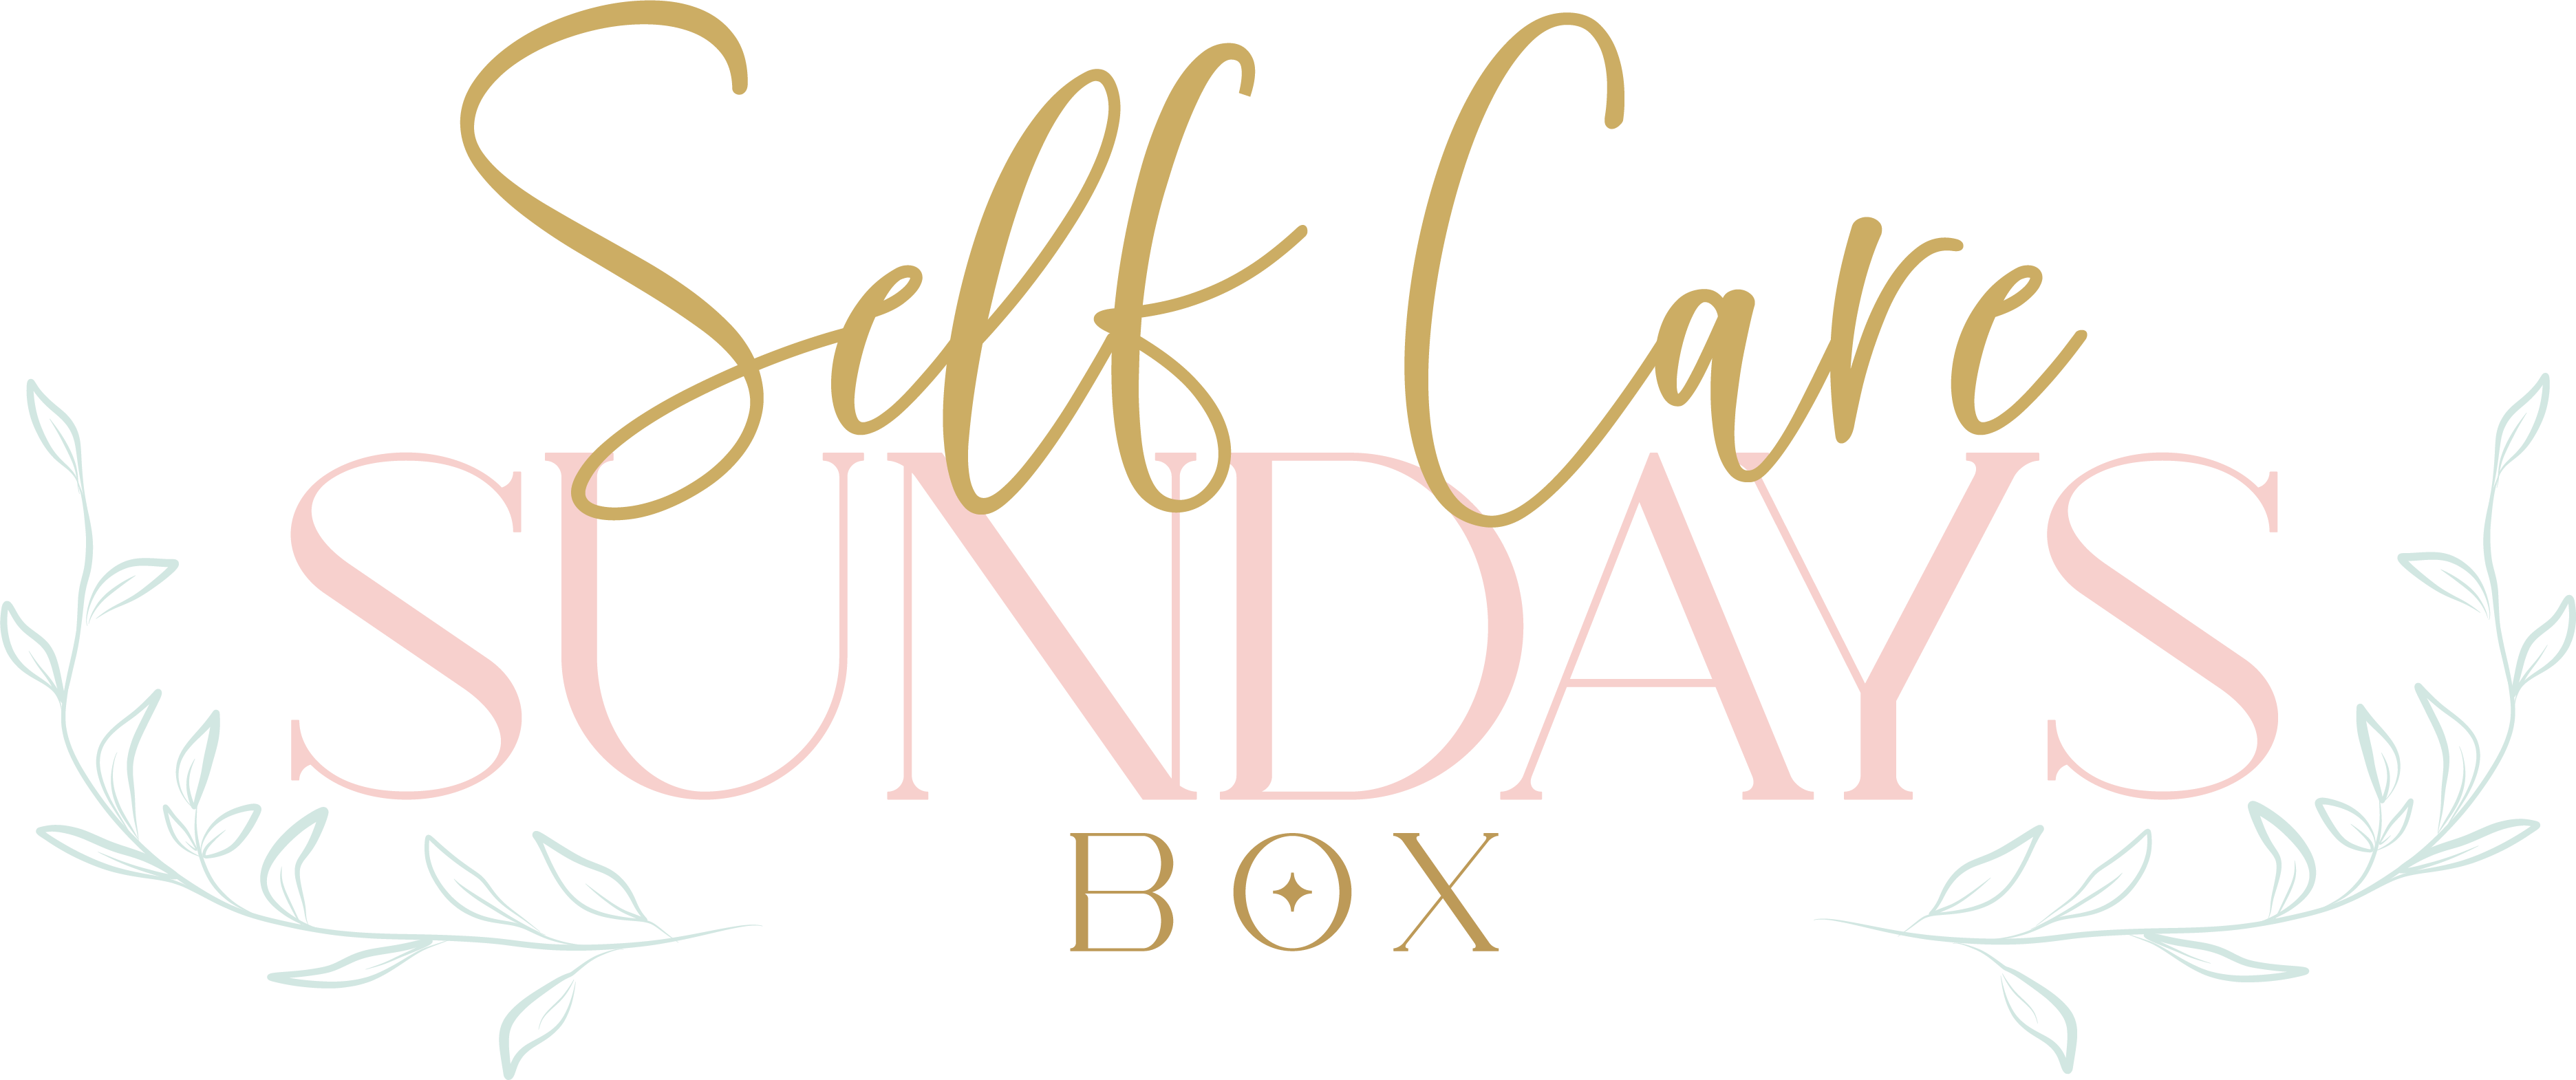 Self Care Sundays Box